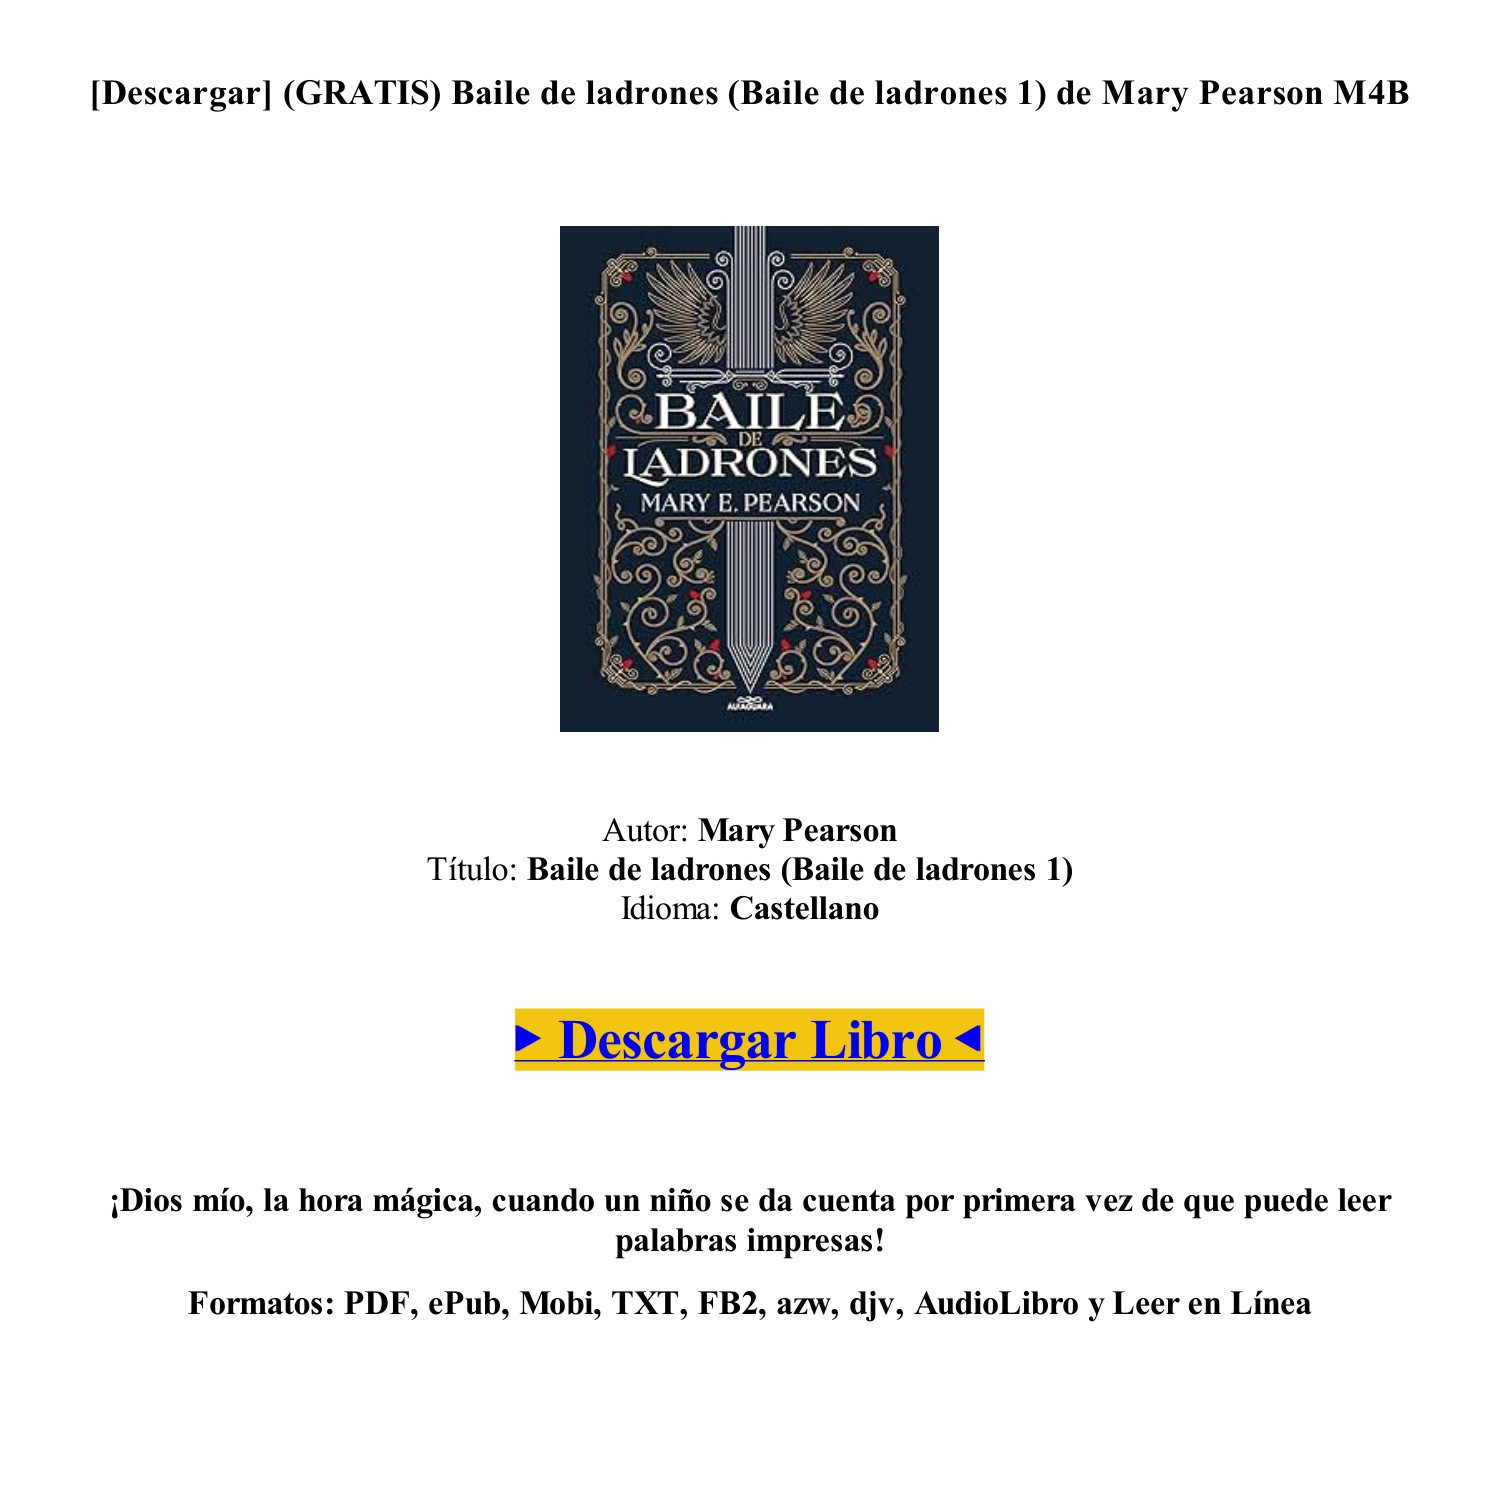 LIBRO) (PDF EPUB) Baile de ladrones (Baile de ladrones 1) de Mary Pearson  (GRATIS).pdf